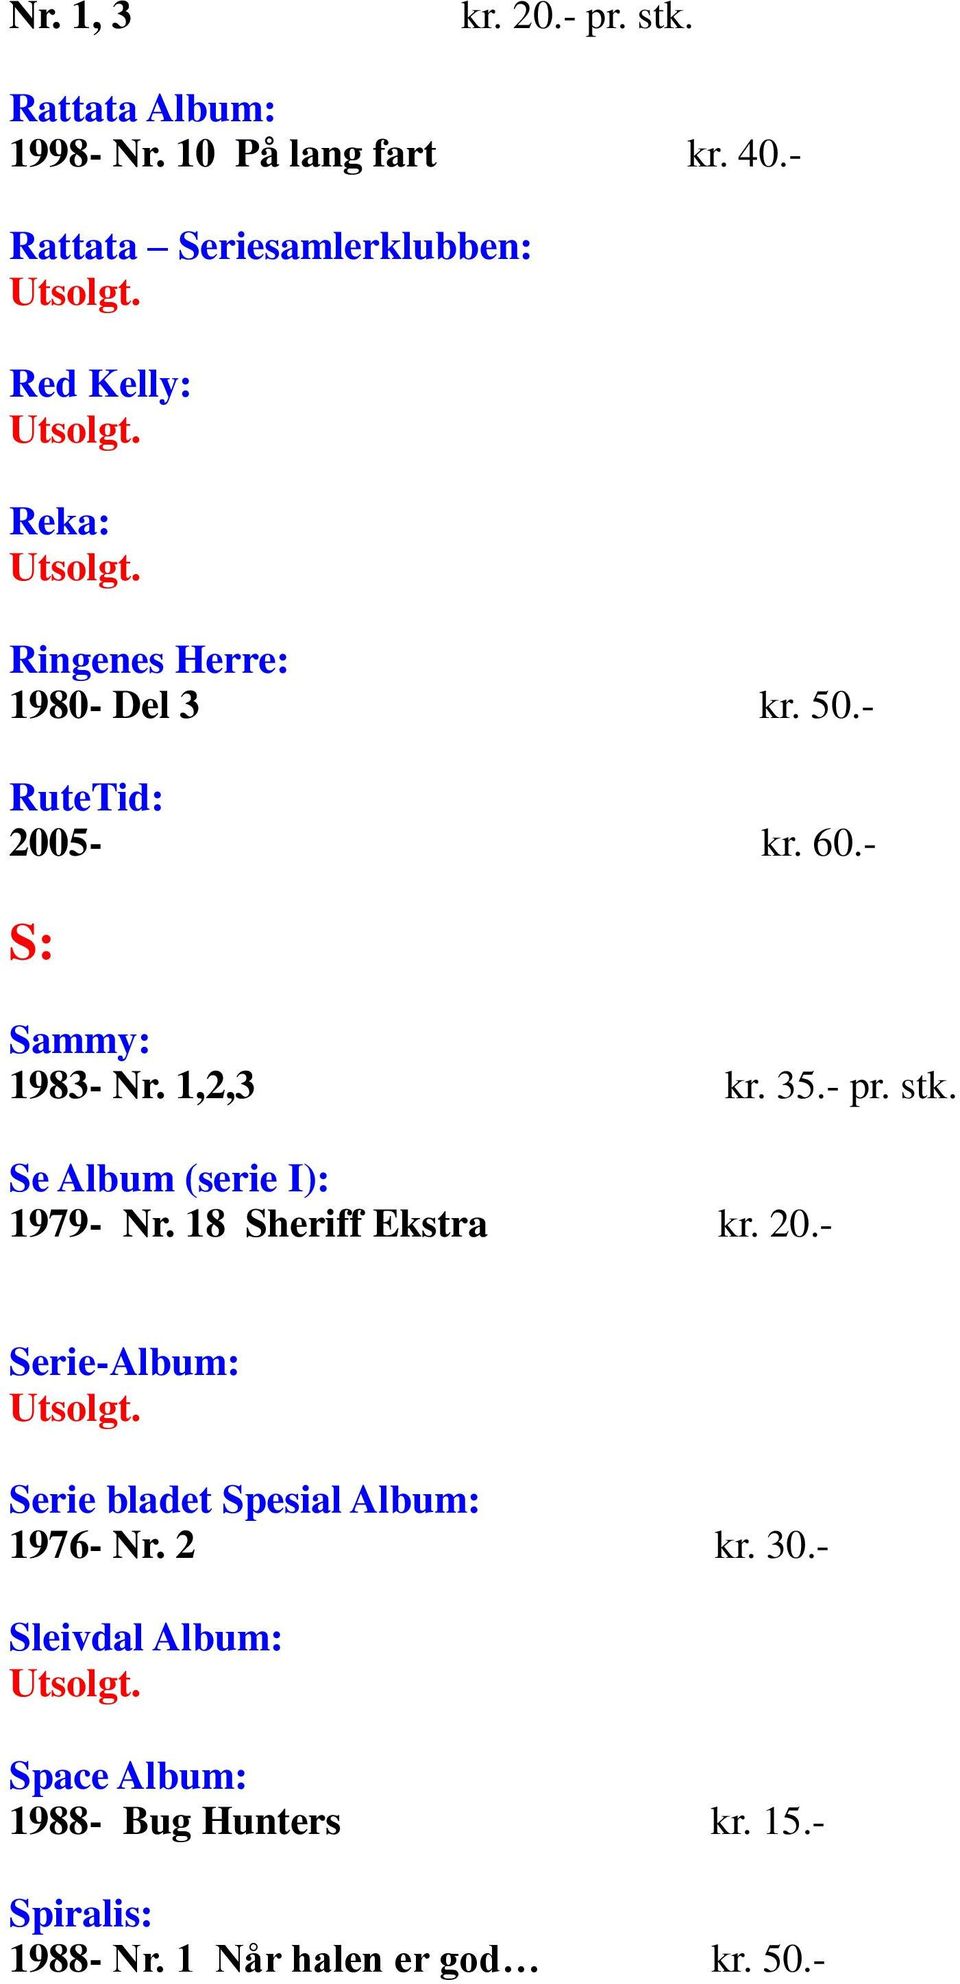 - S: Sammy: 1983- Nr. 1,2,3 kr. 35.- pr. stk. Se Album (serie I): 1979- Nr. 18 Sheriff Ekstra kr. 20.